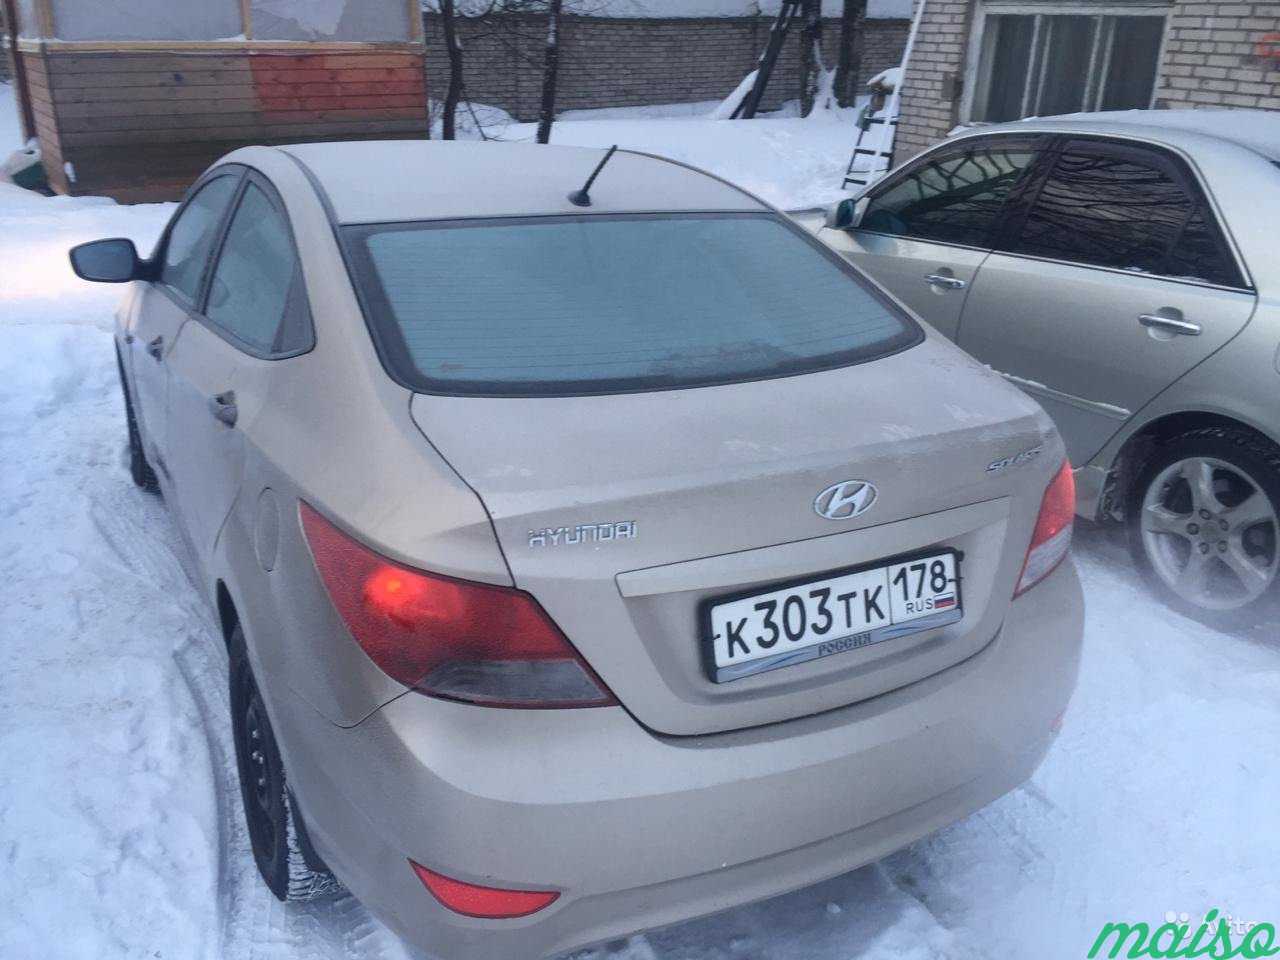 Автомобиль Hyundai Solaris АКПП в раскат в Санкт-Петербурге. Фото 5